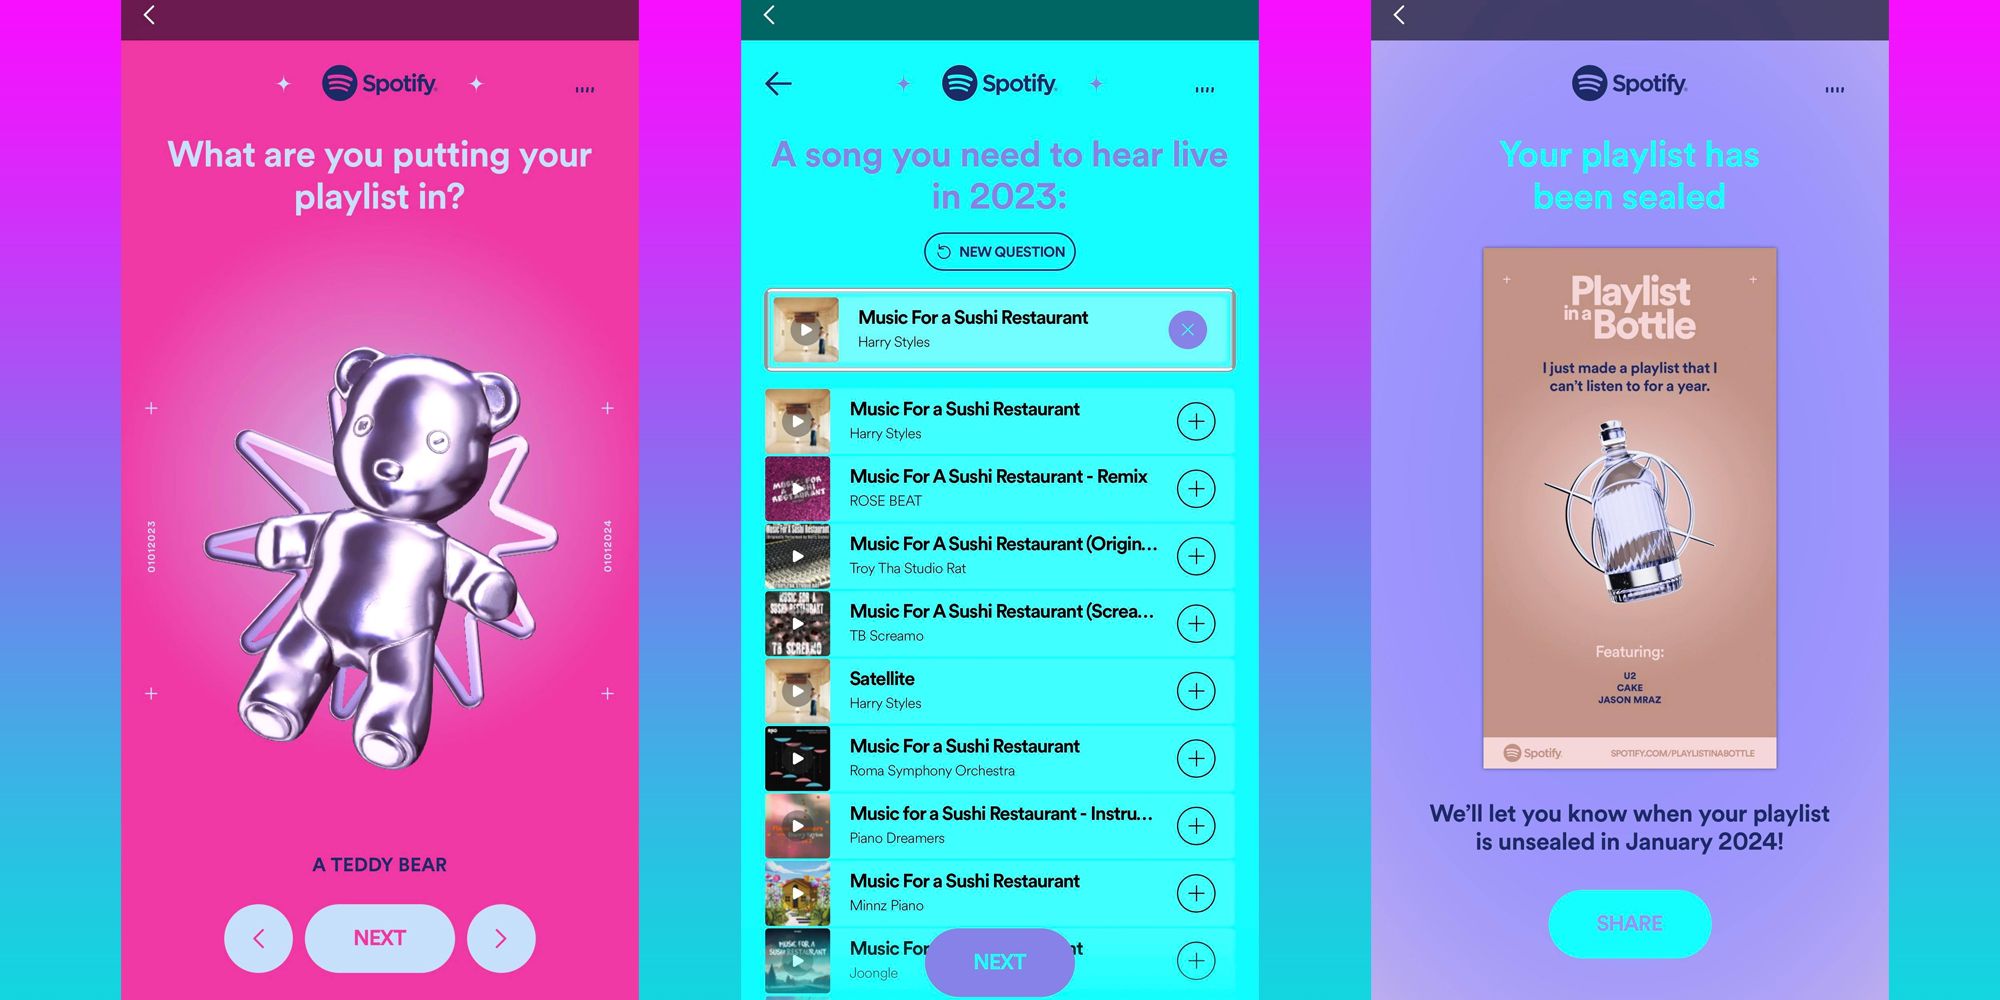 Páginas da Playlist In A Bottle do Spotify exibidas em três telas do tamanho de um smartphone